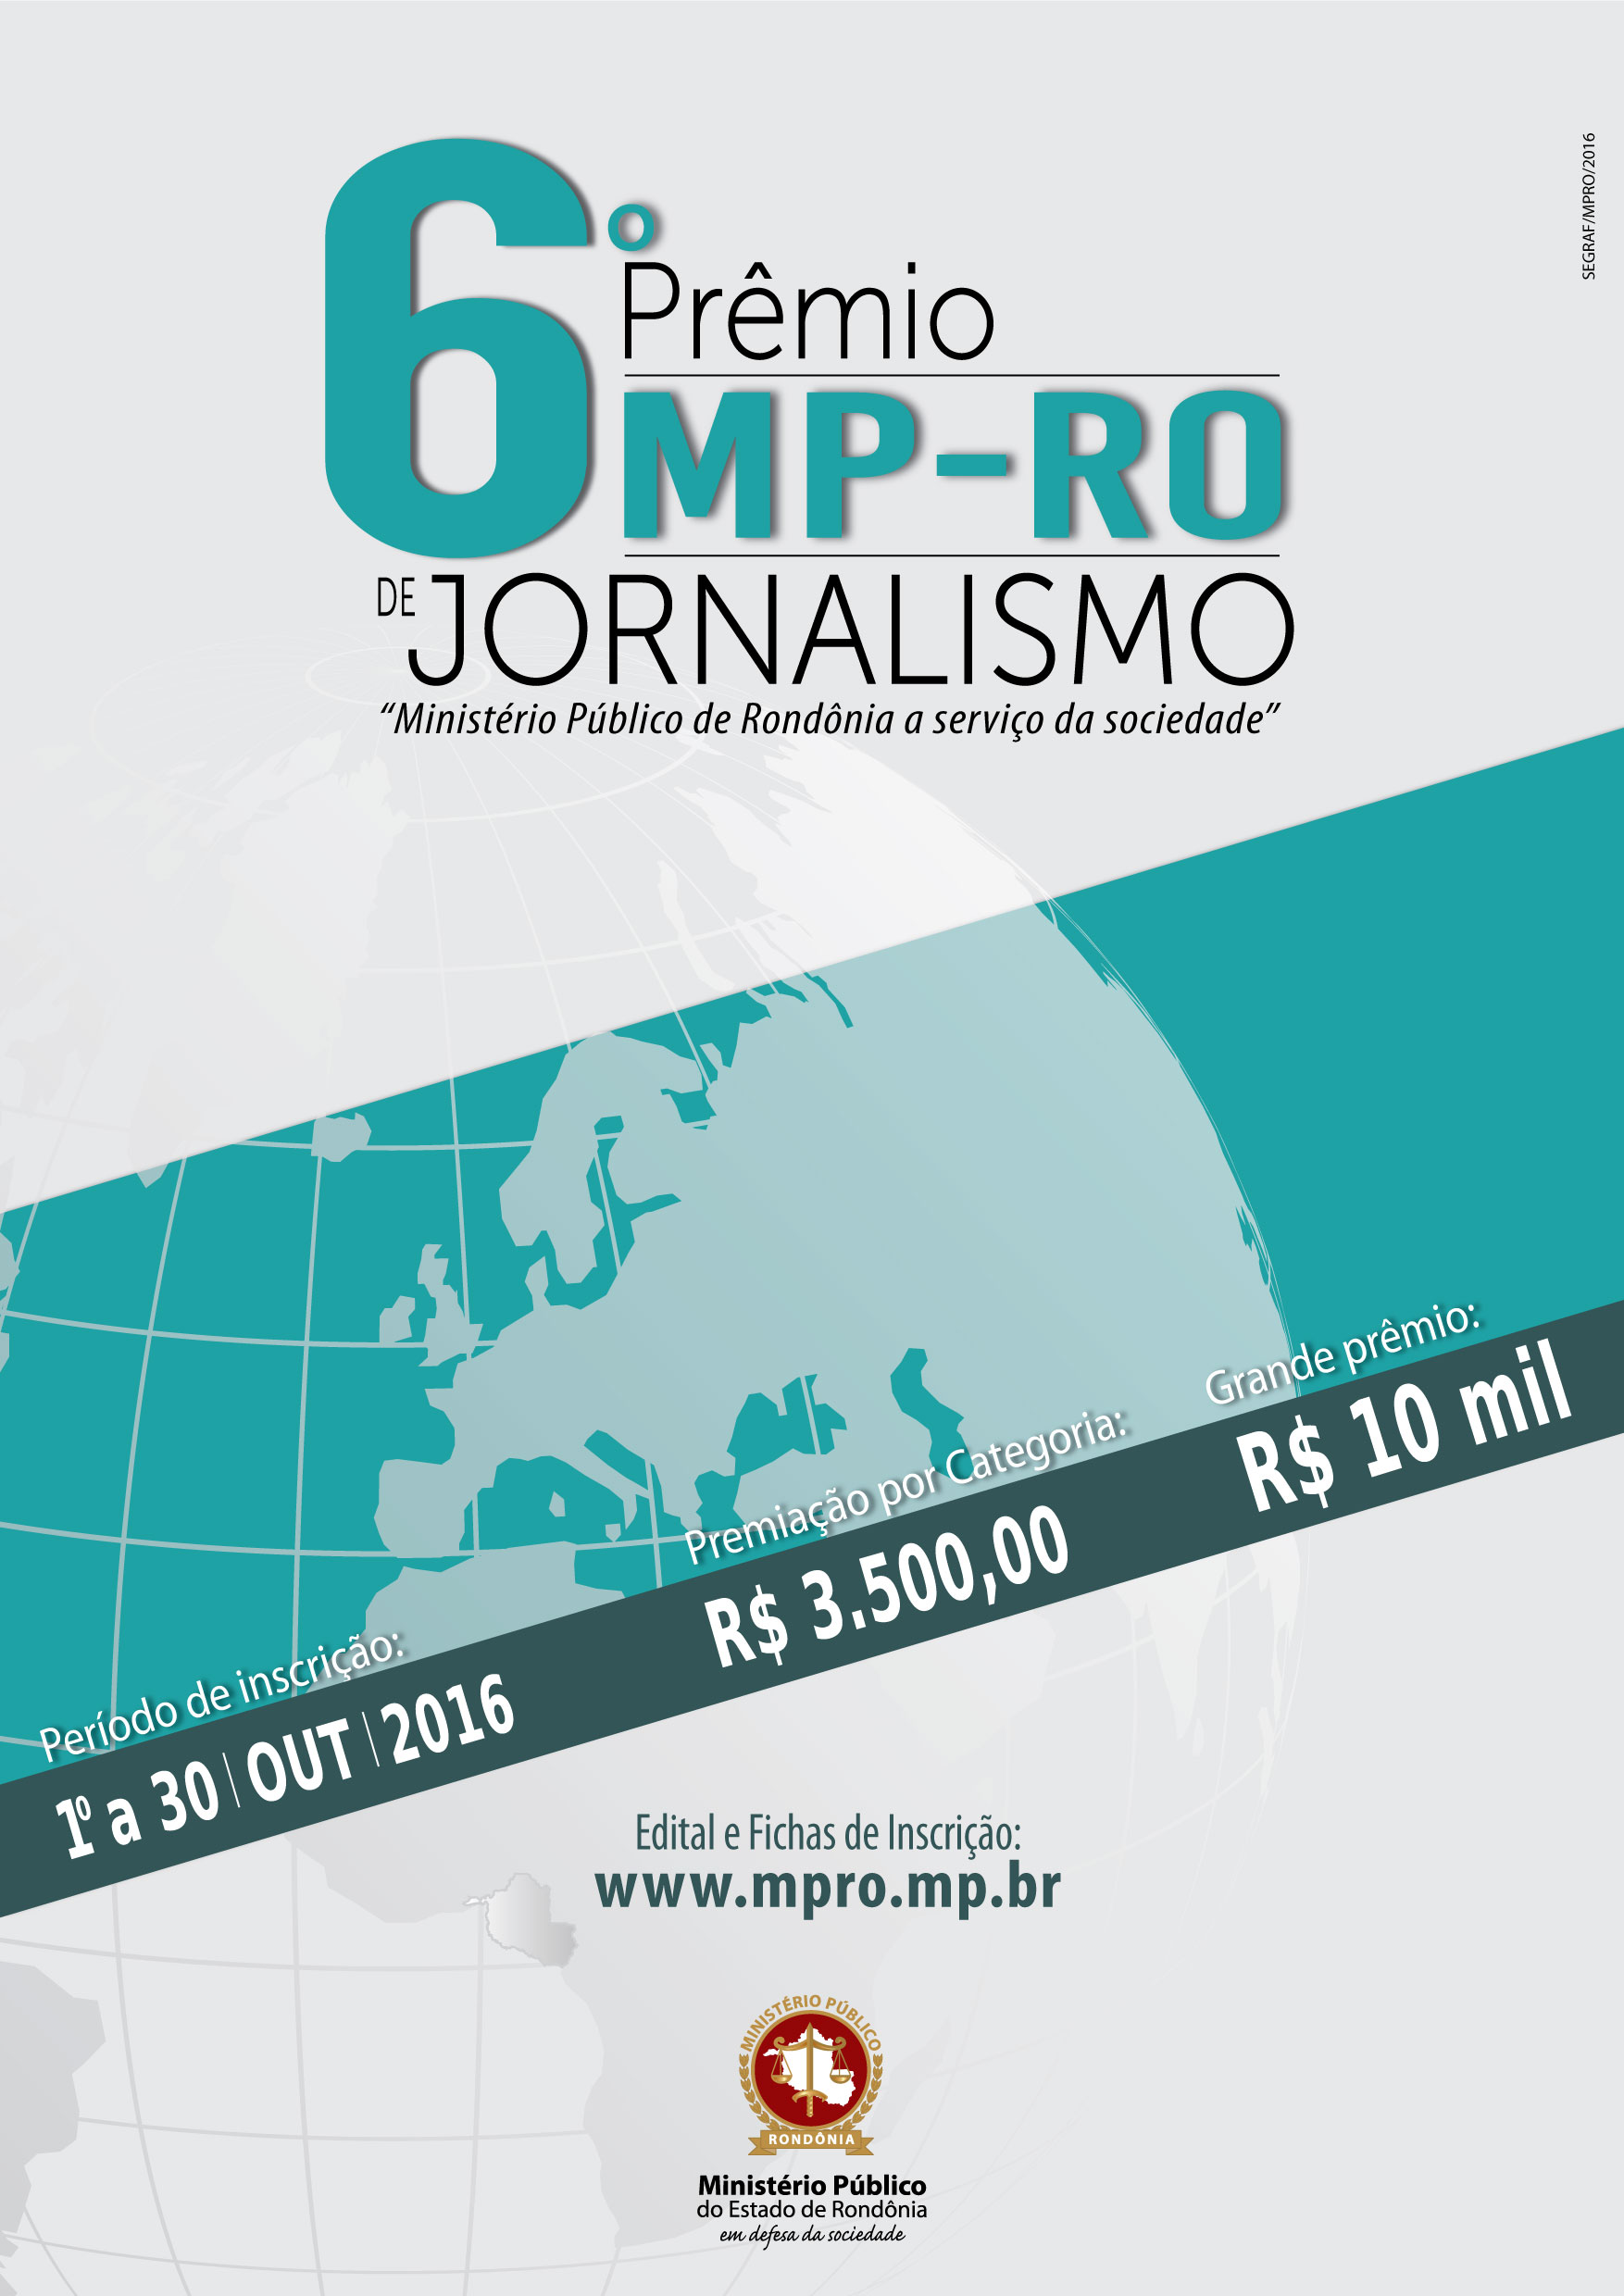 Imagem da ideia Prêmio MP-RO de Jornalismo